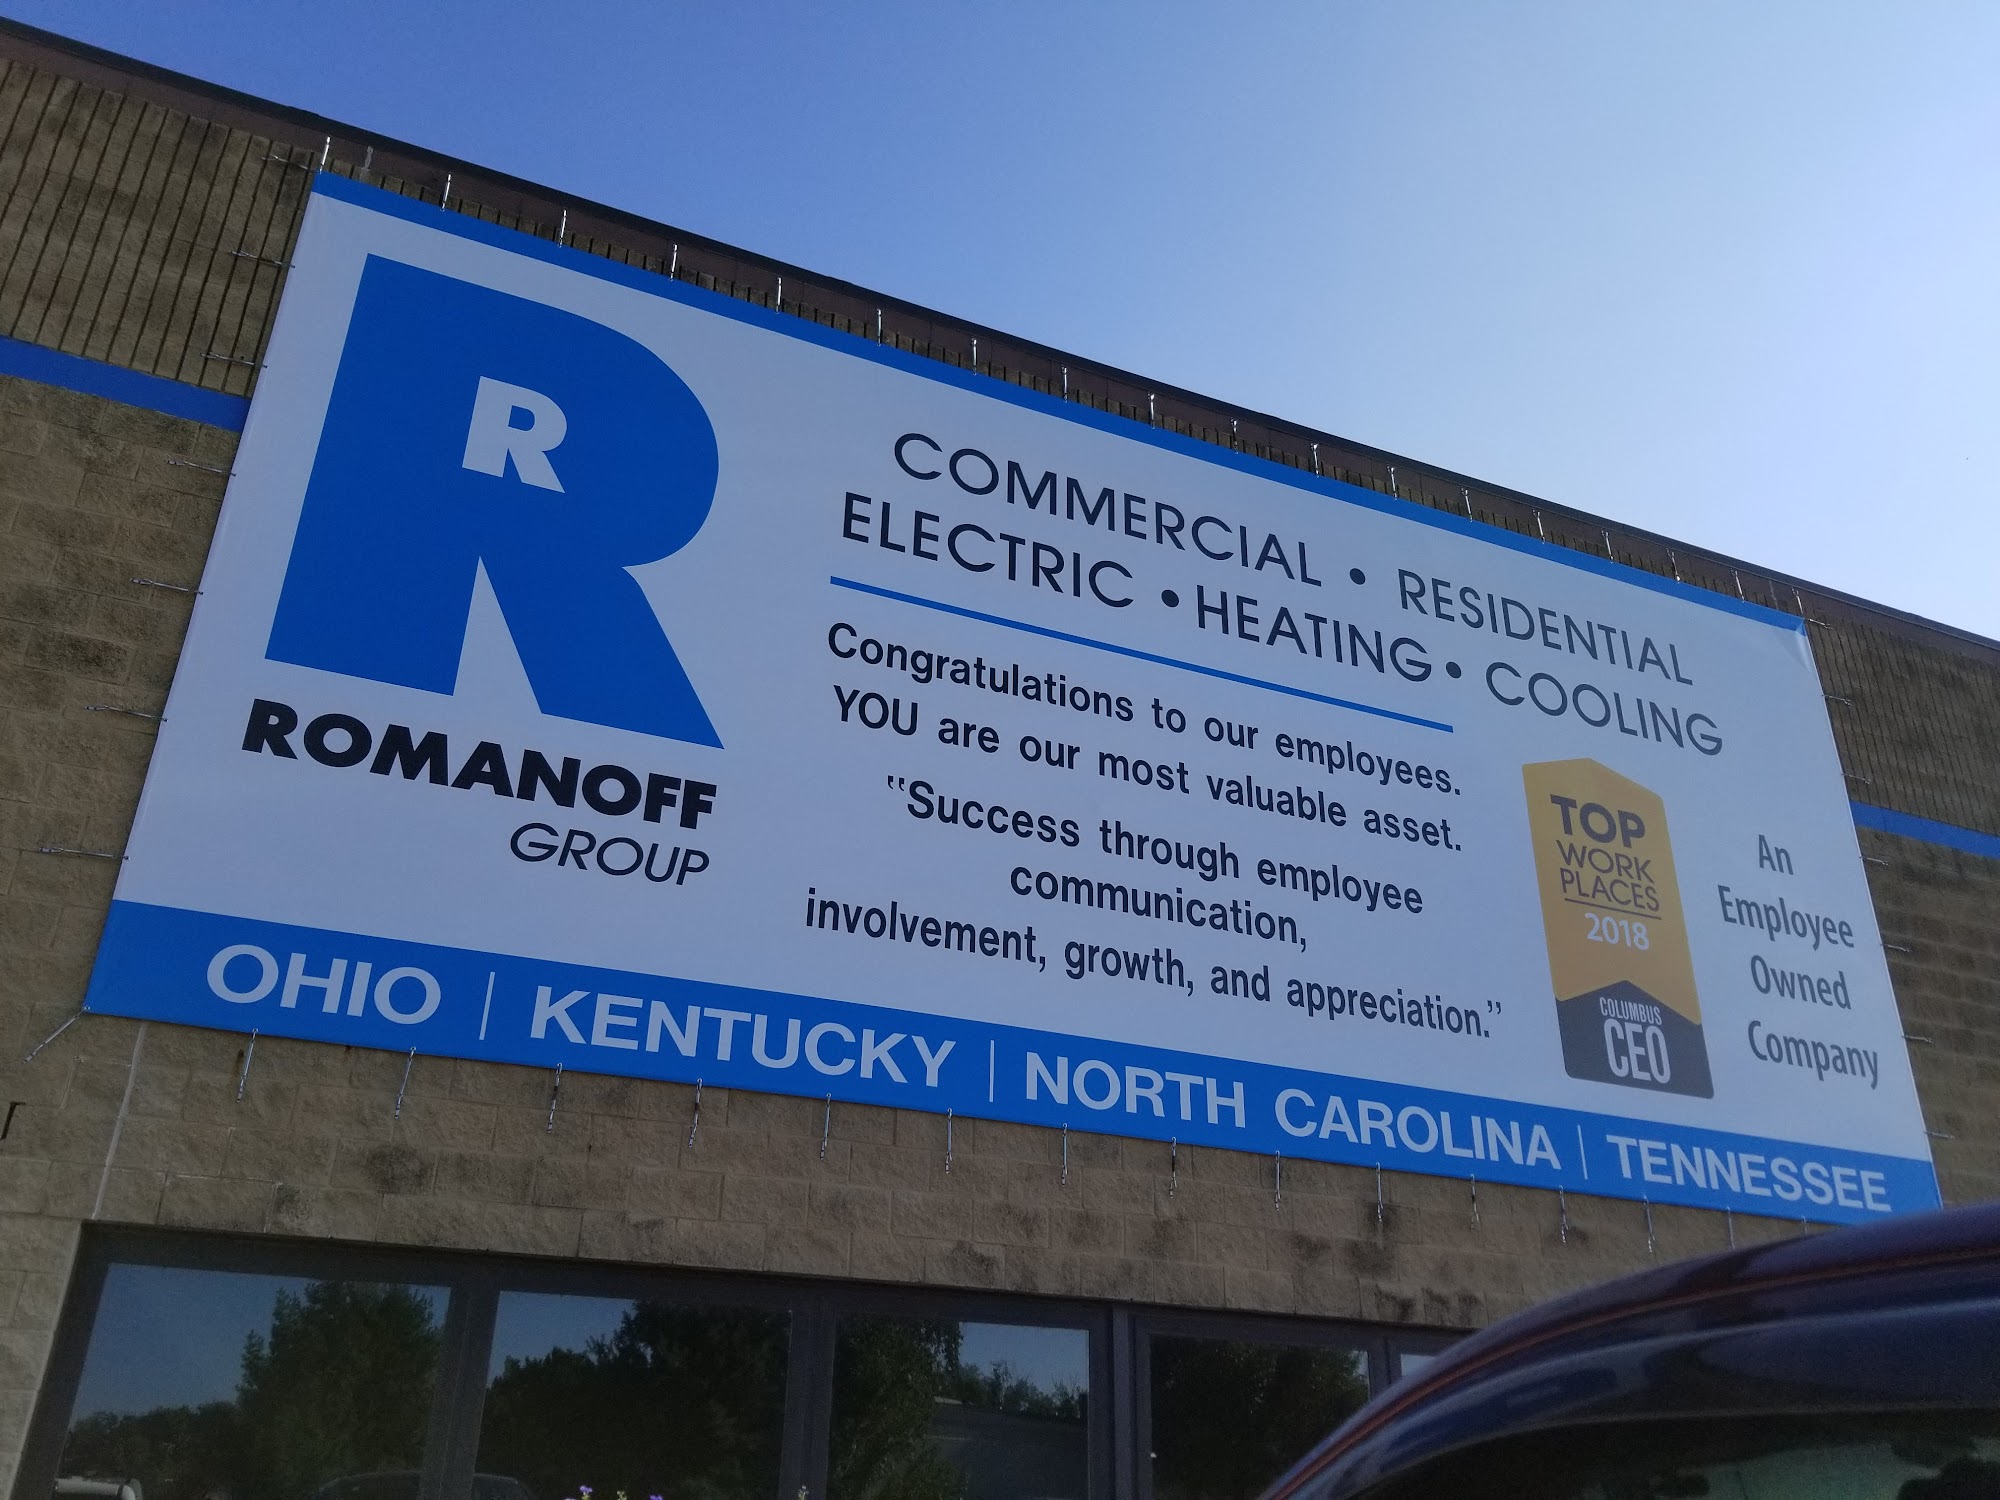 Romanoff Electric